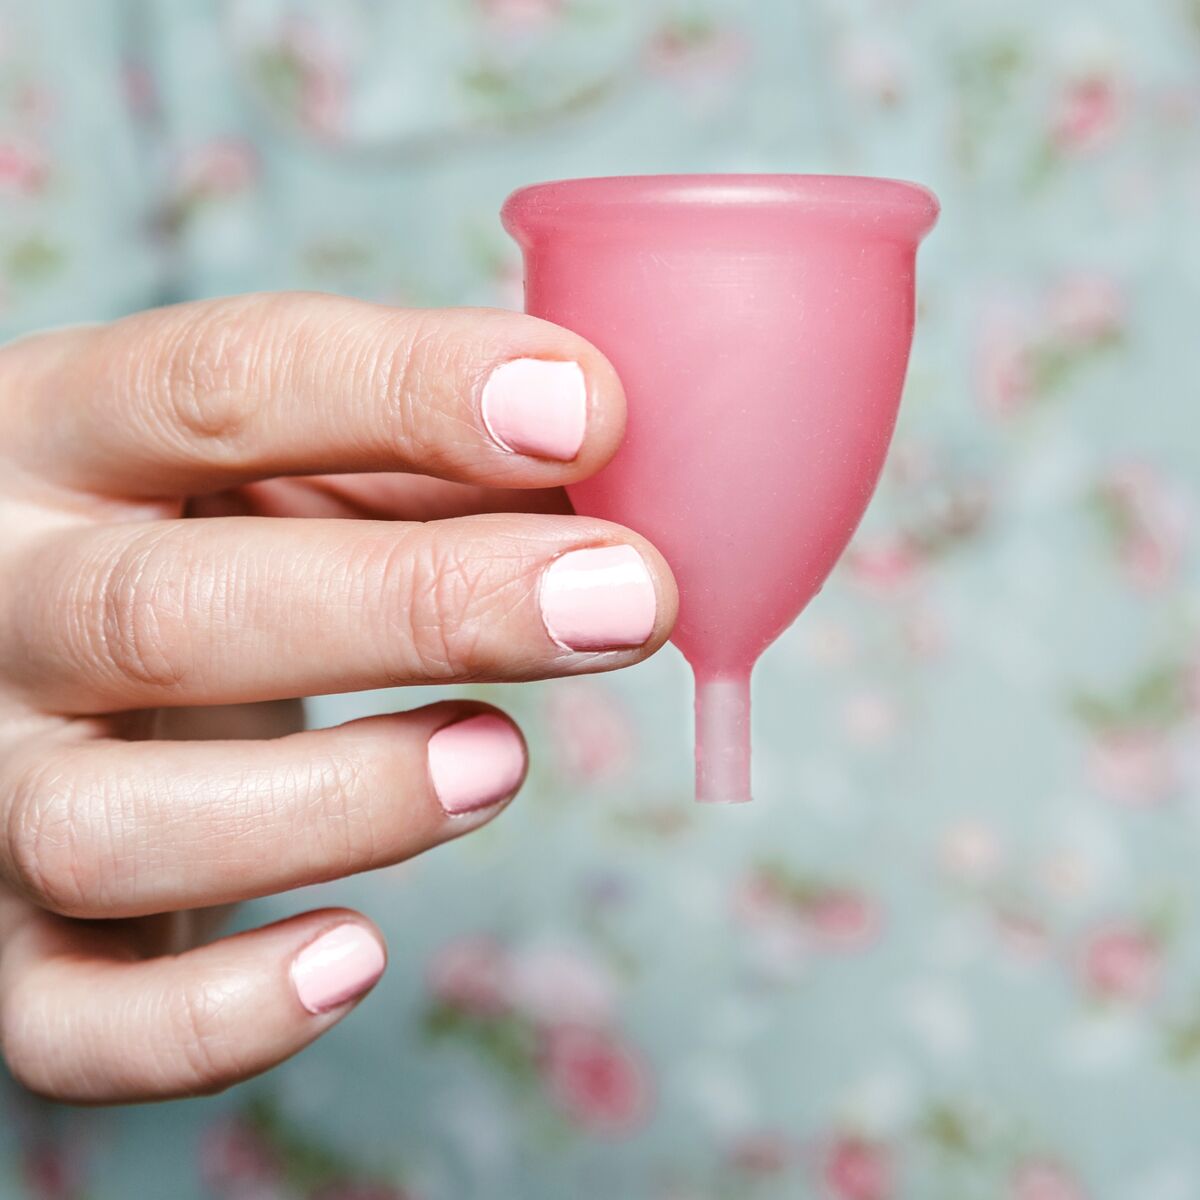 Peut-on porter une cup menstruelle avec un stérilet ? : Femme ...